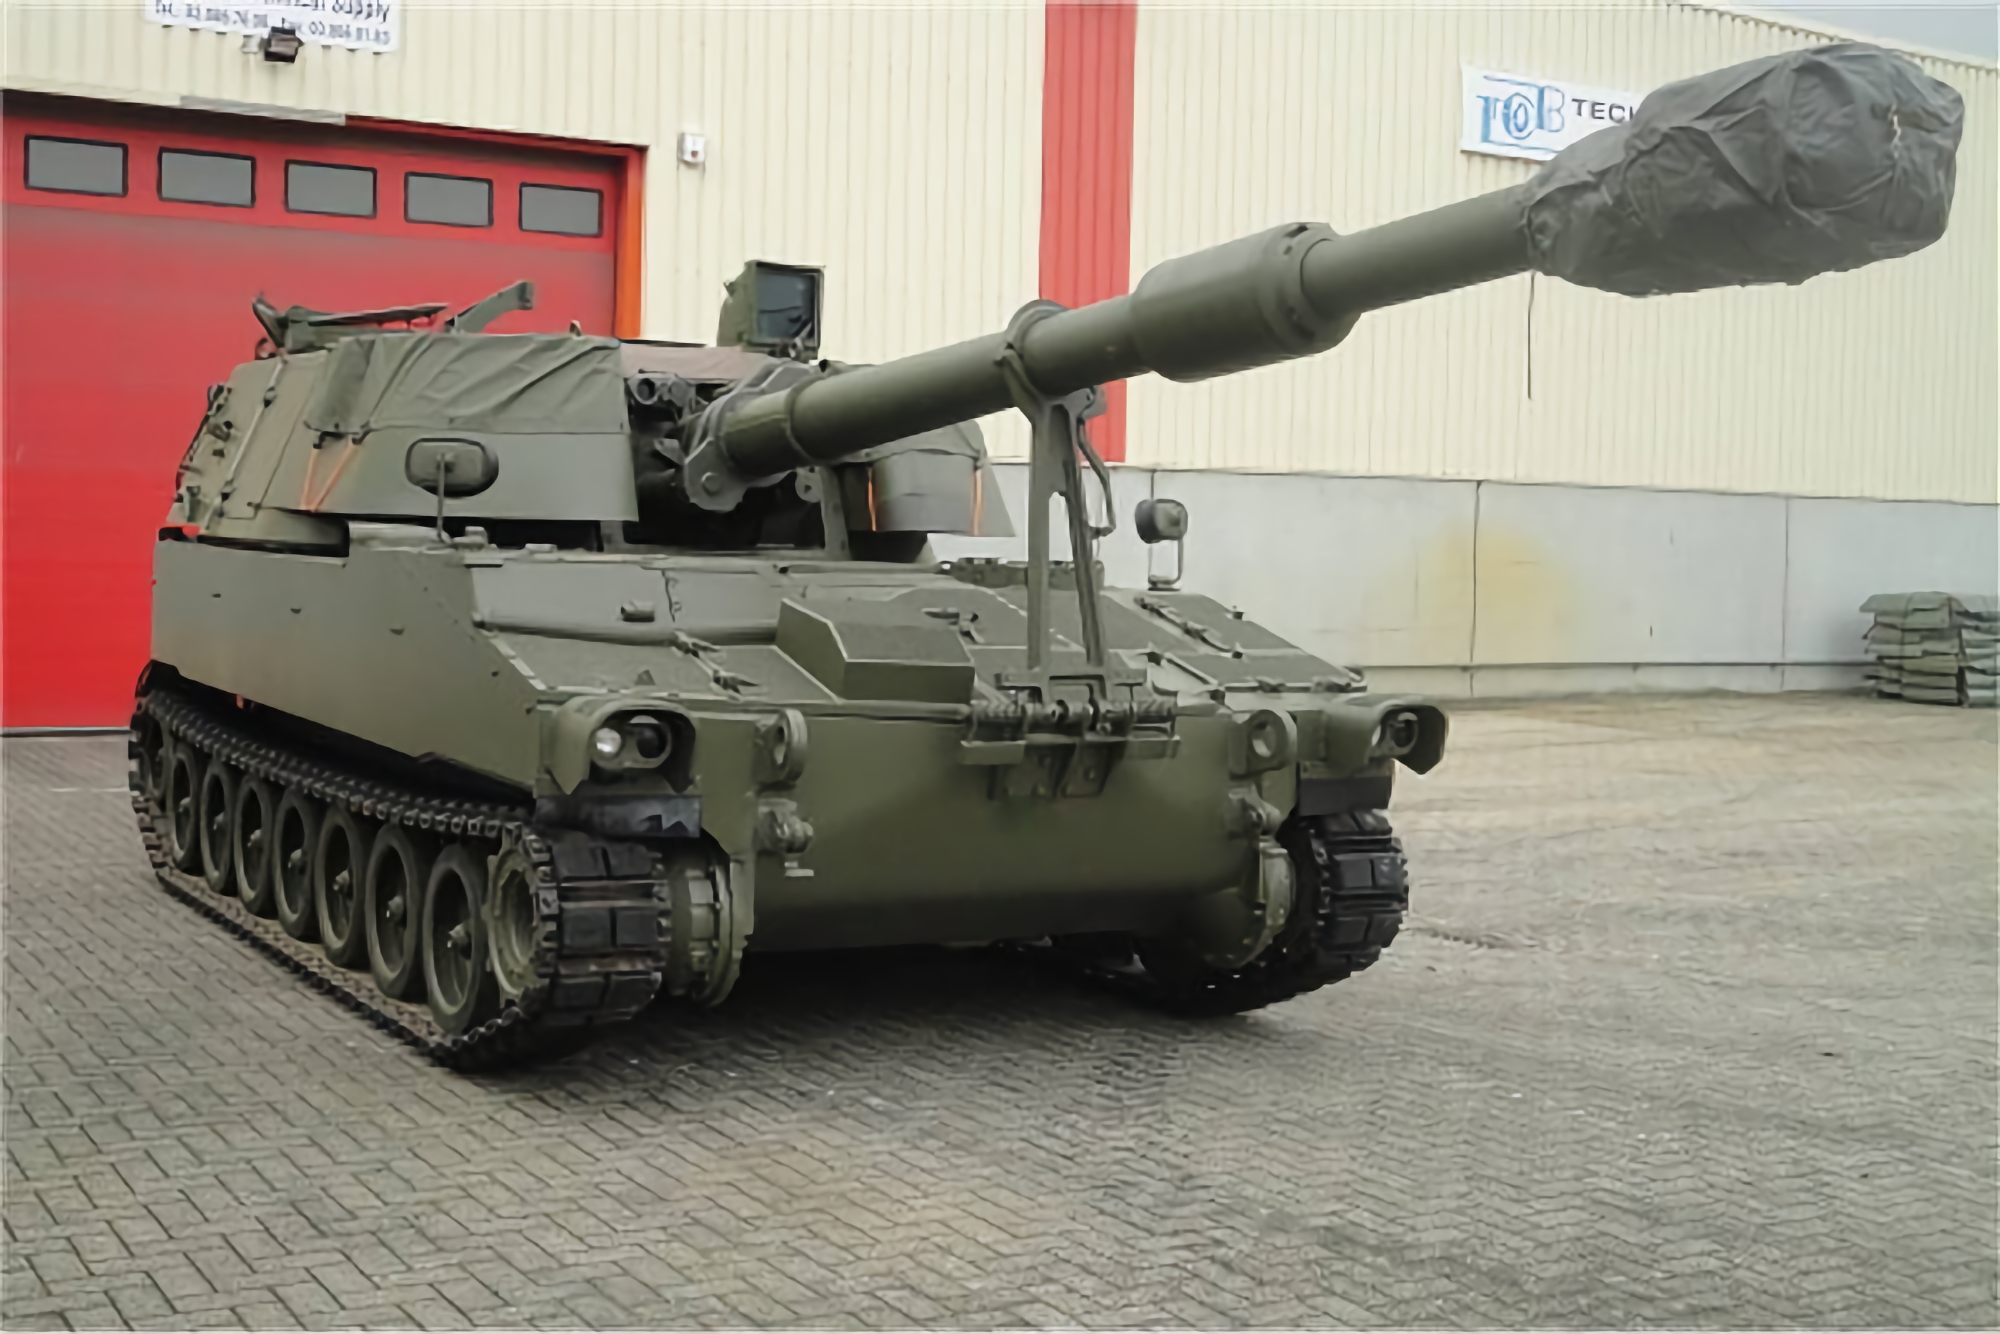 Wielka Brytania kupiła i naprawiła ponad 20 dział samobieżnych M109: teraz są wysyłane na Ukrainę